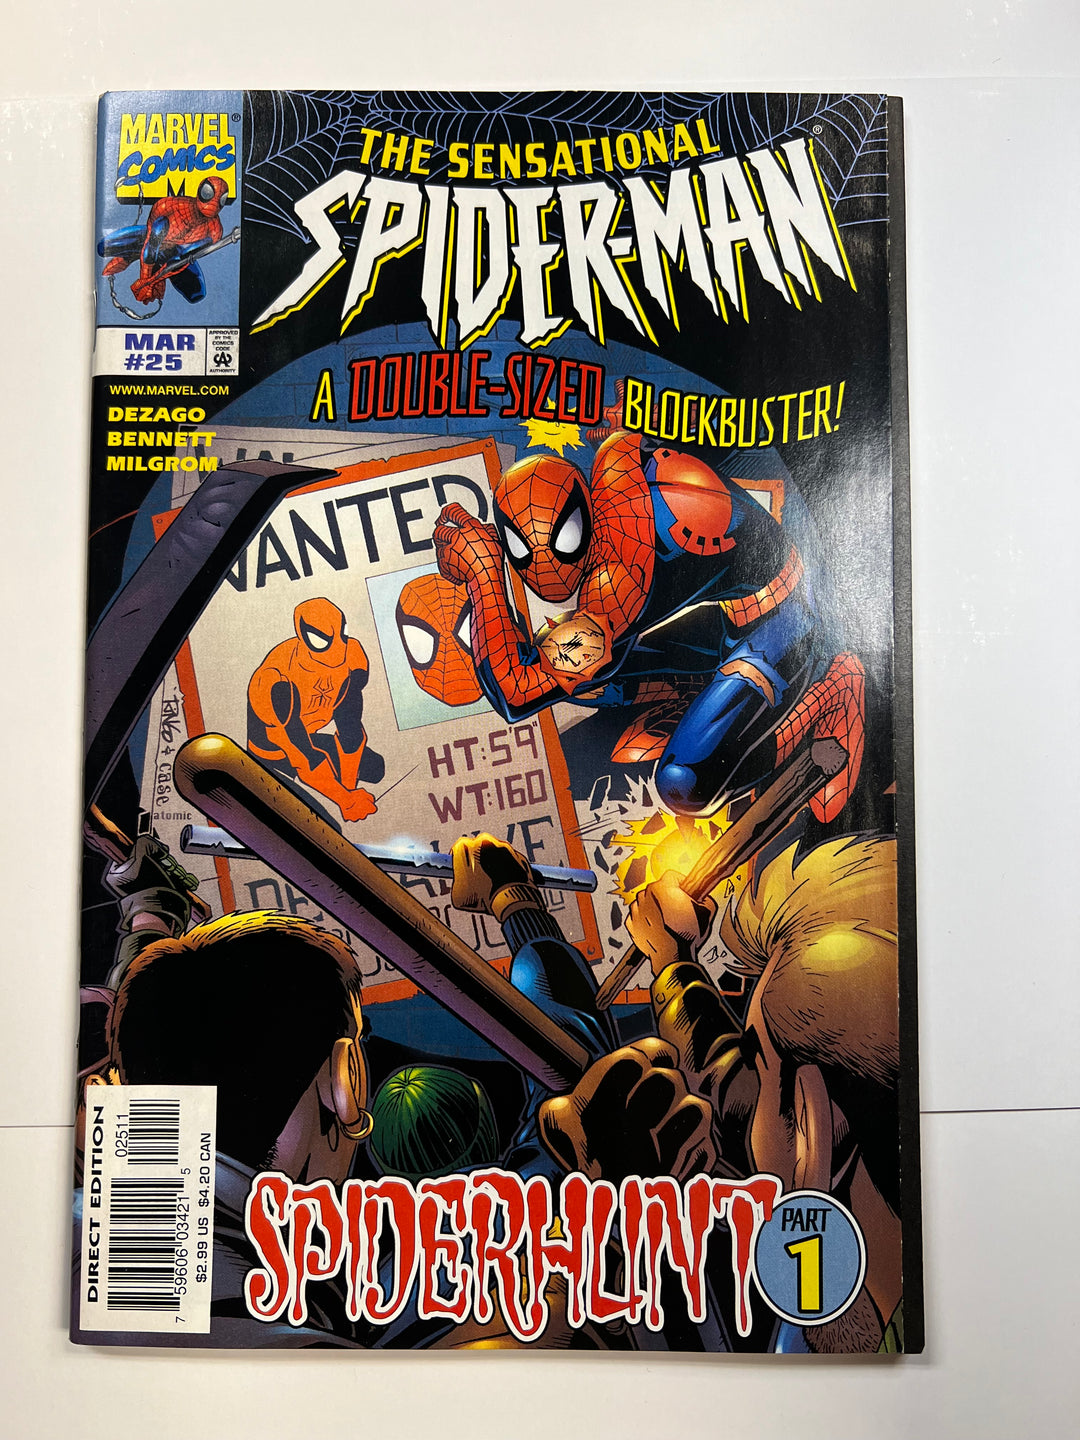 Sensational Spider-Man #25 Marvel 1998 VG/F